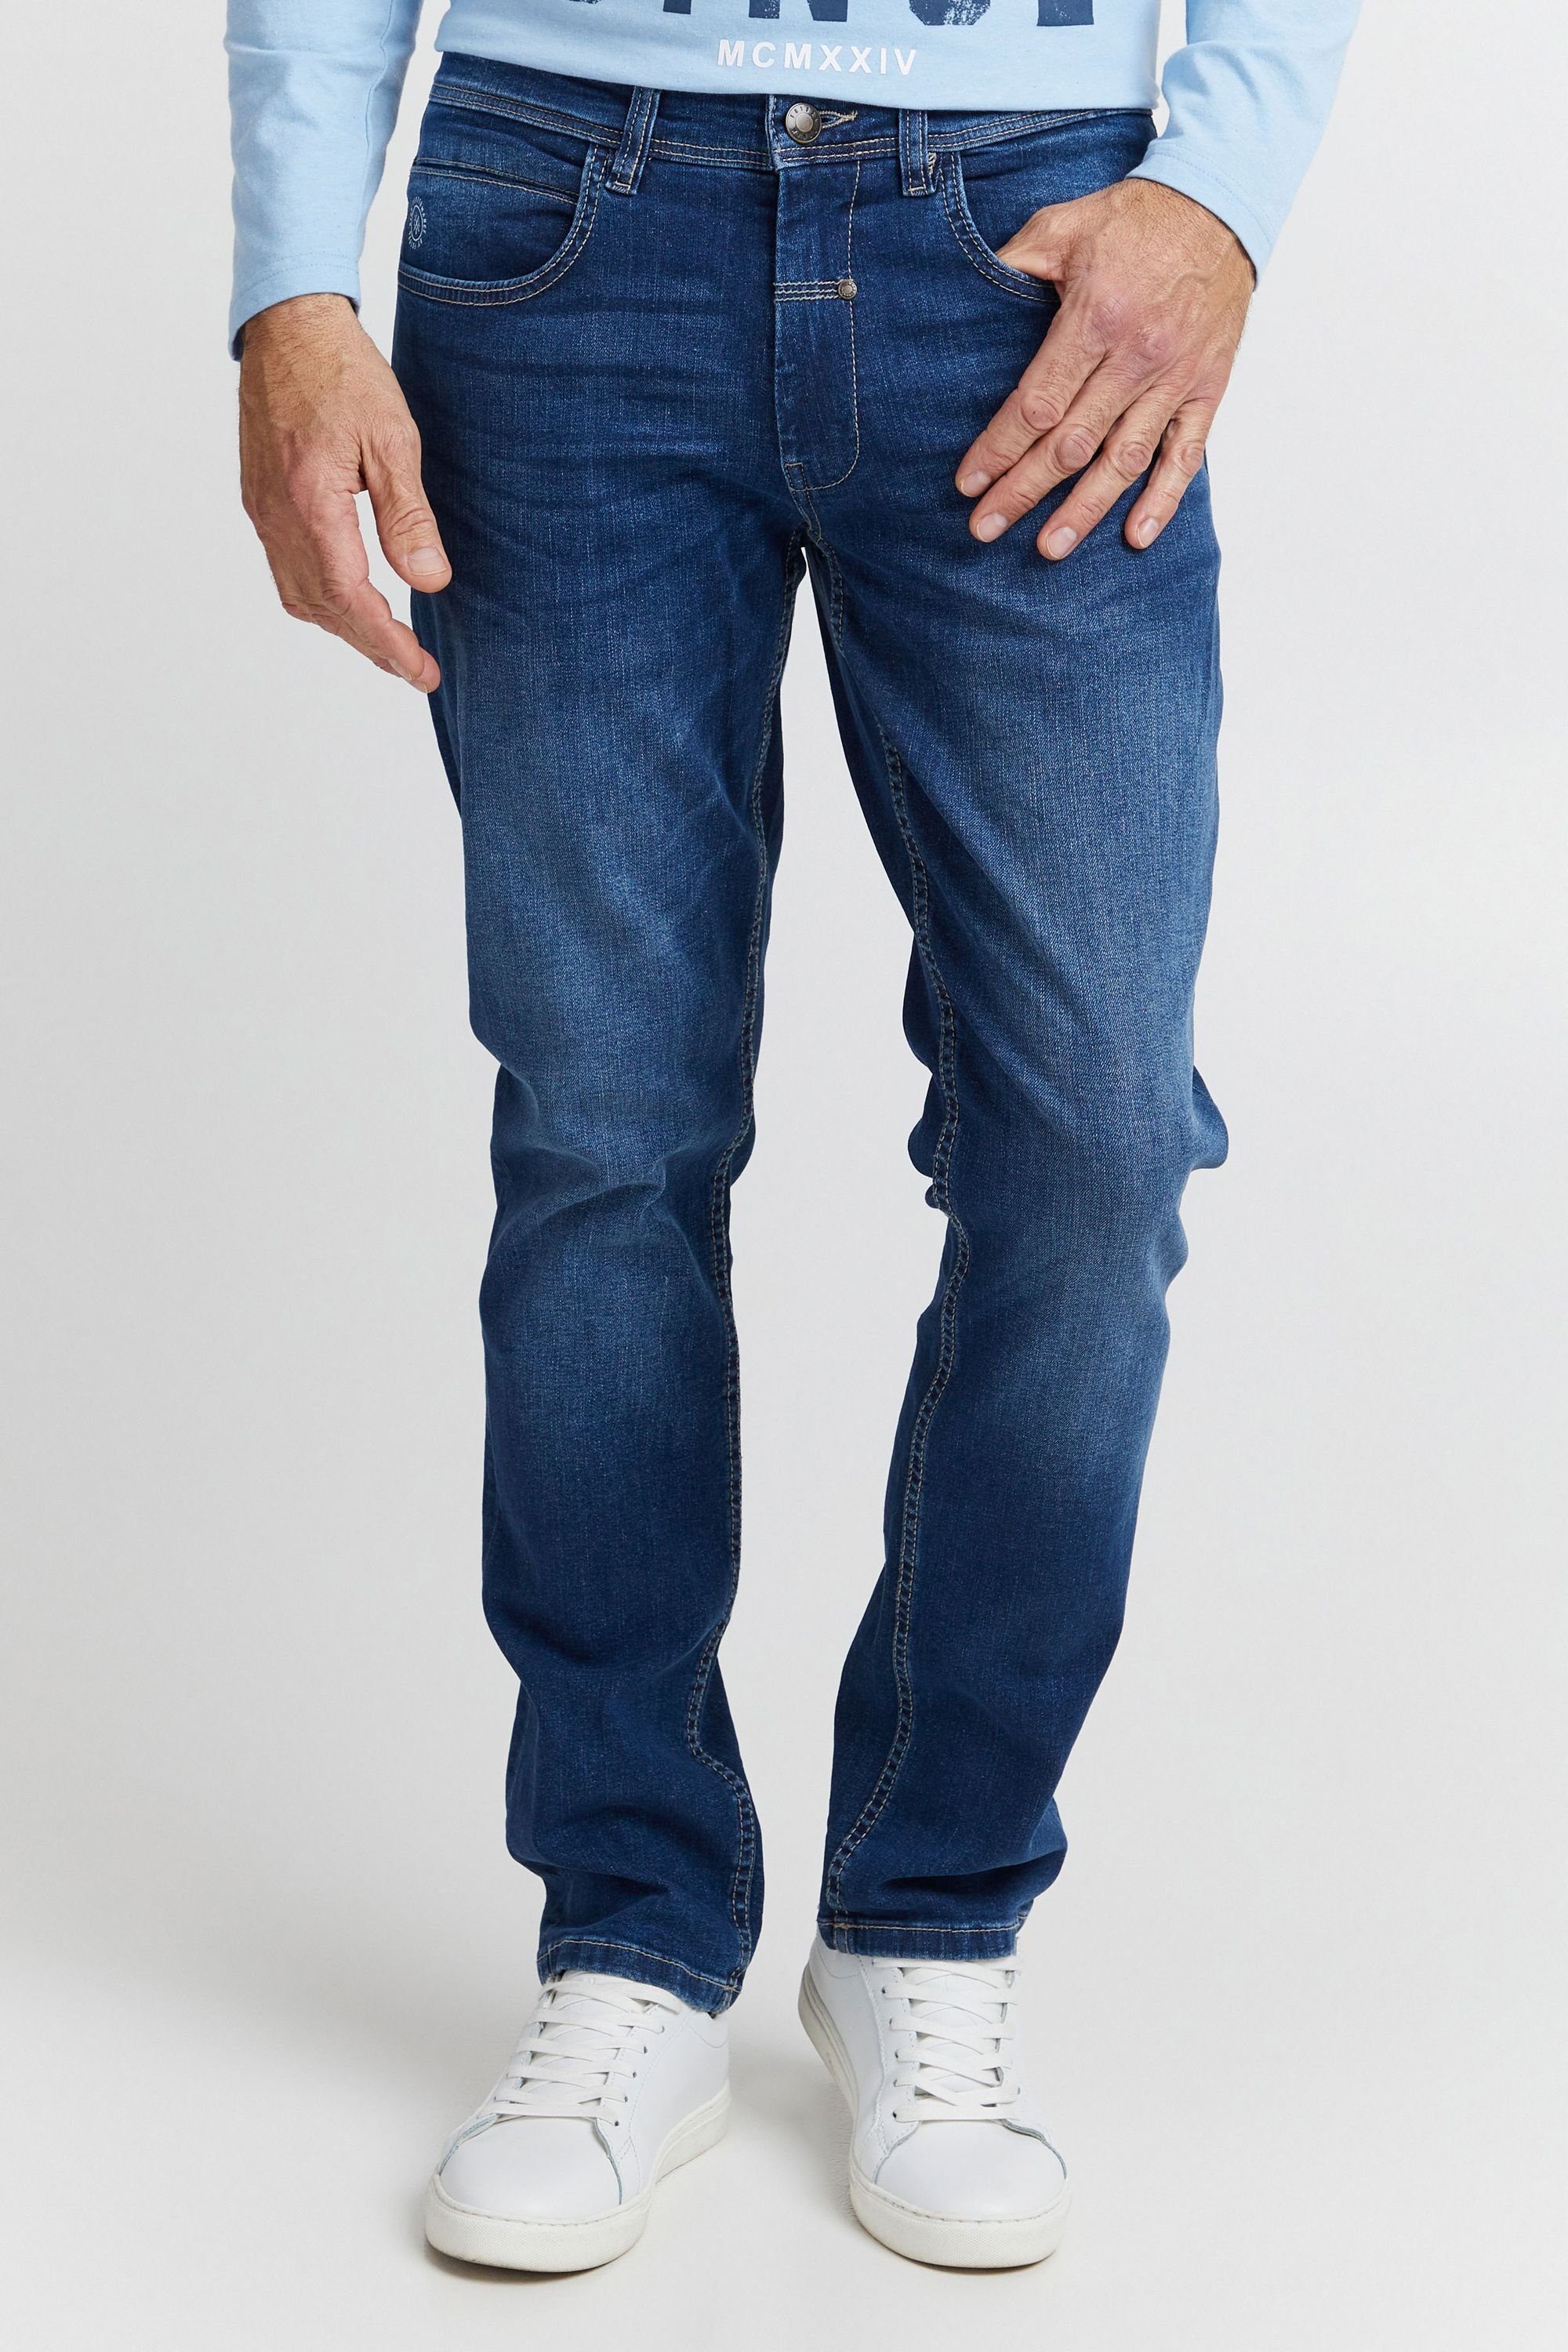 FQ1924 Denim FQRoman middle FQ1924 5-Pocket-Jeans blue